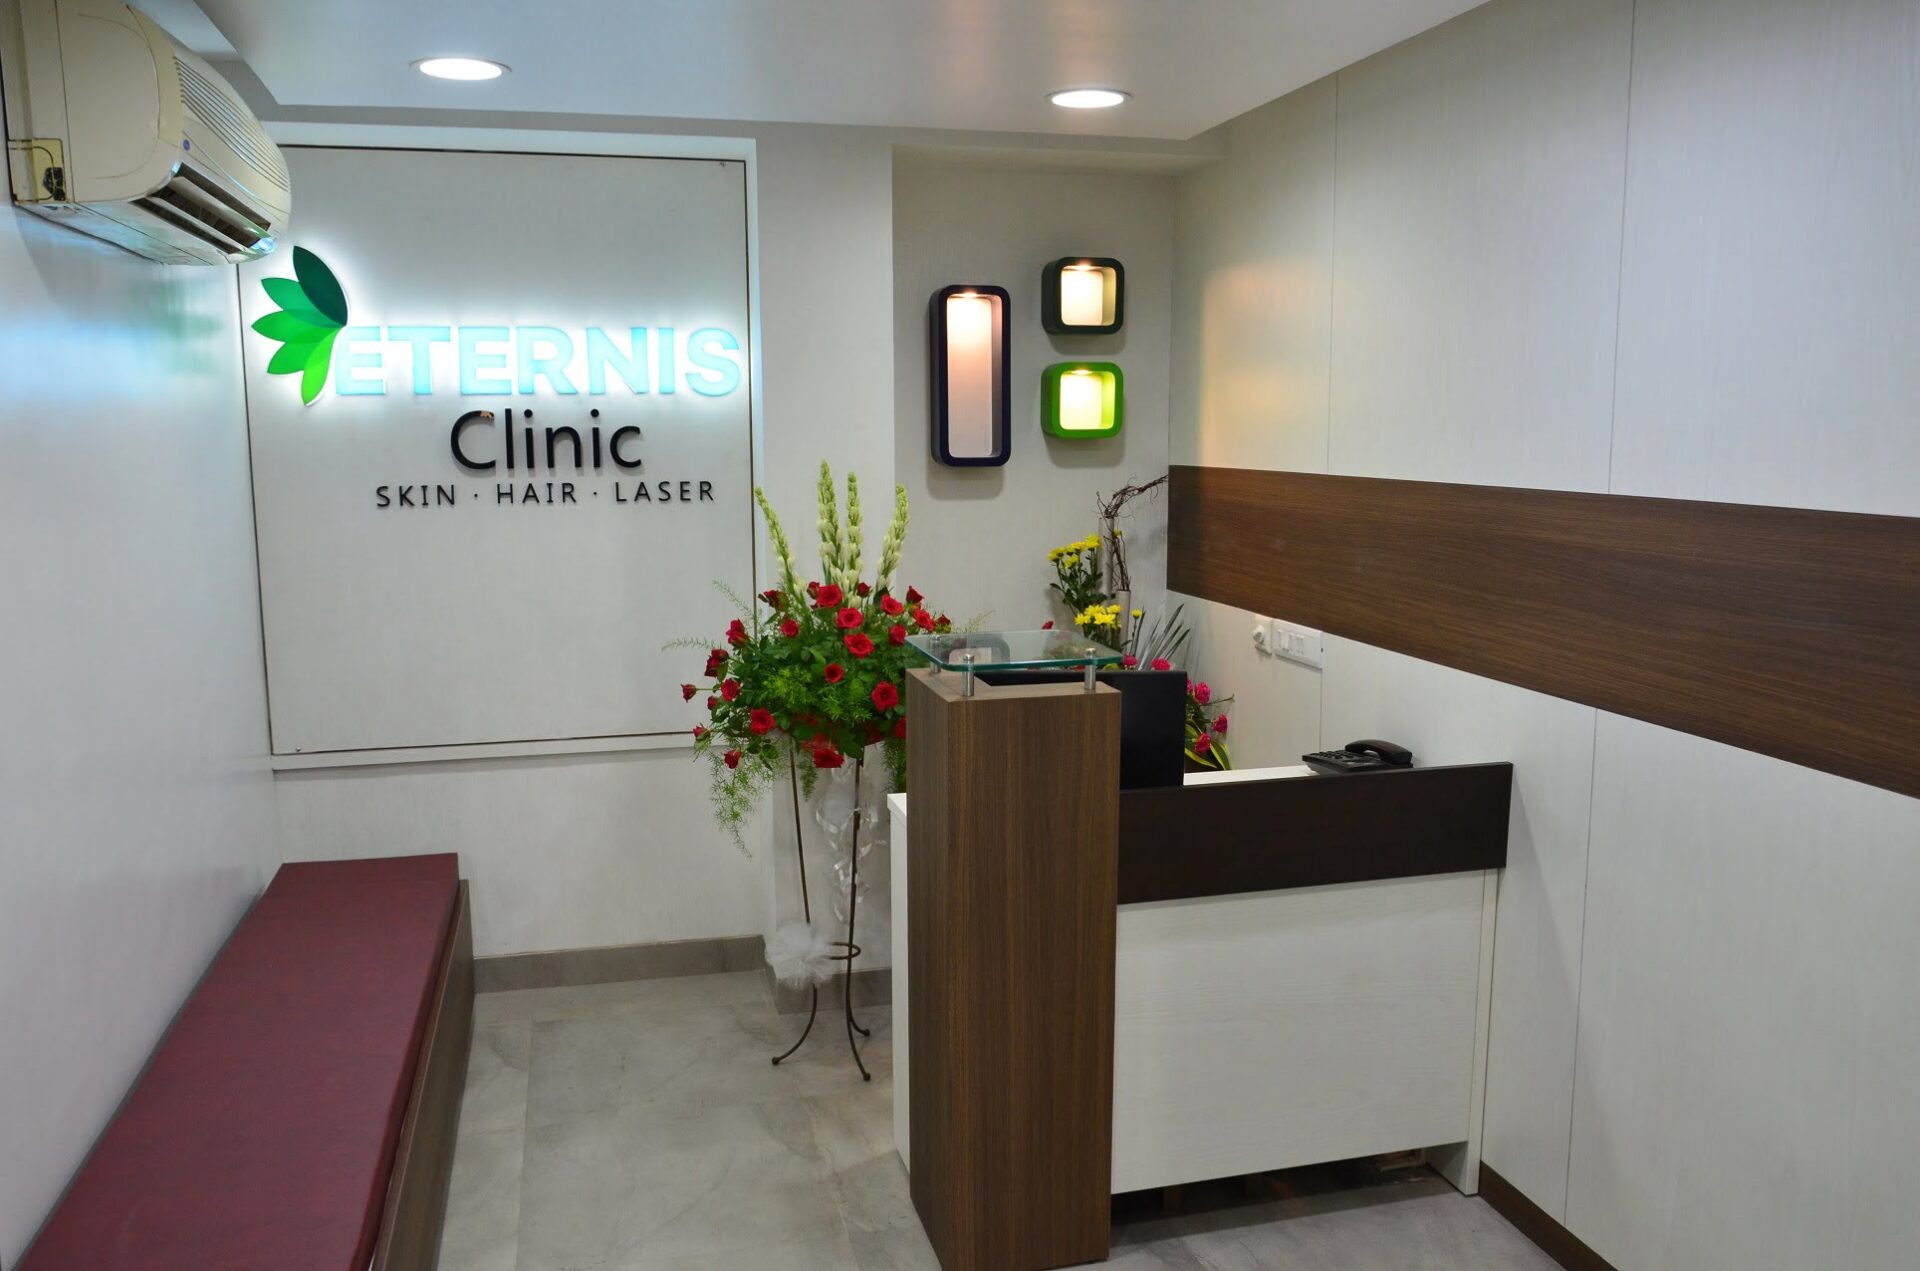 Etetnis Clinic Interior